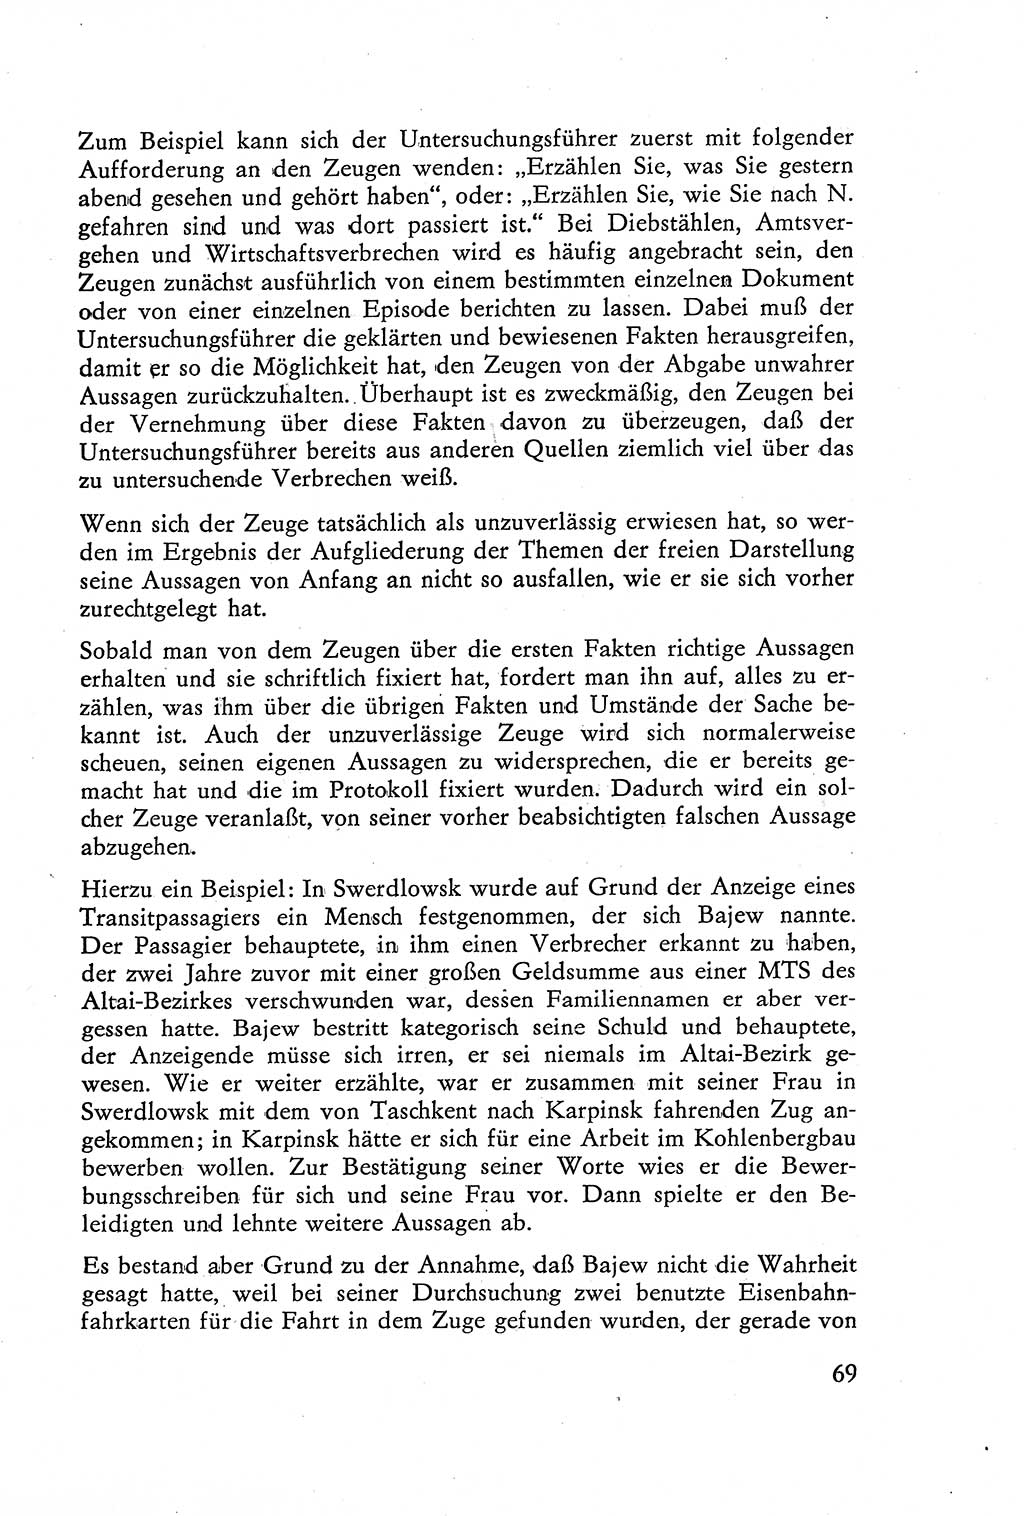 Die Vernehmung [Deutsche Demokratische Republik (DDR)] 1960, Seite 69 (Vern. DDR 1960, S. 69)